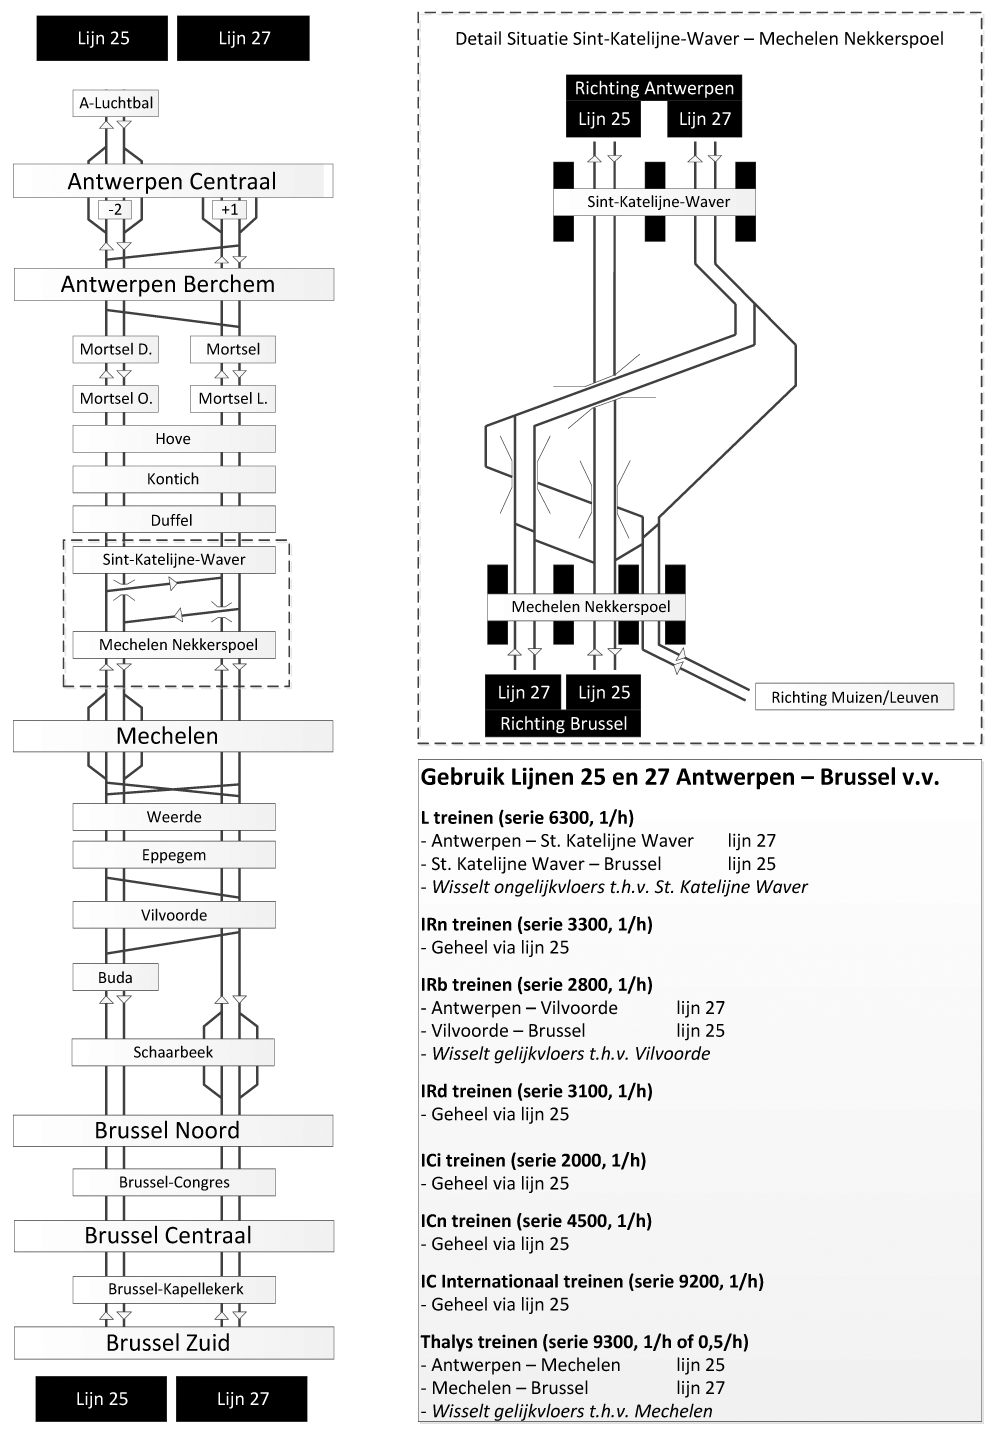 Figuur 59: Vereenvoudigd sporenschema van de spoorlijnen 25 en 27 tussen Antwerpen en Brussel